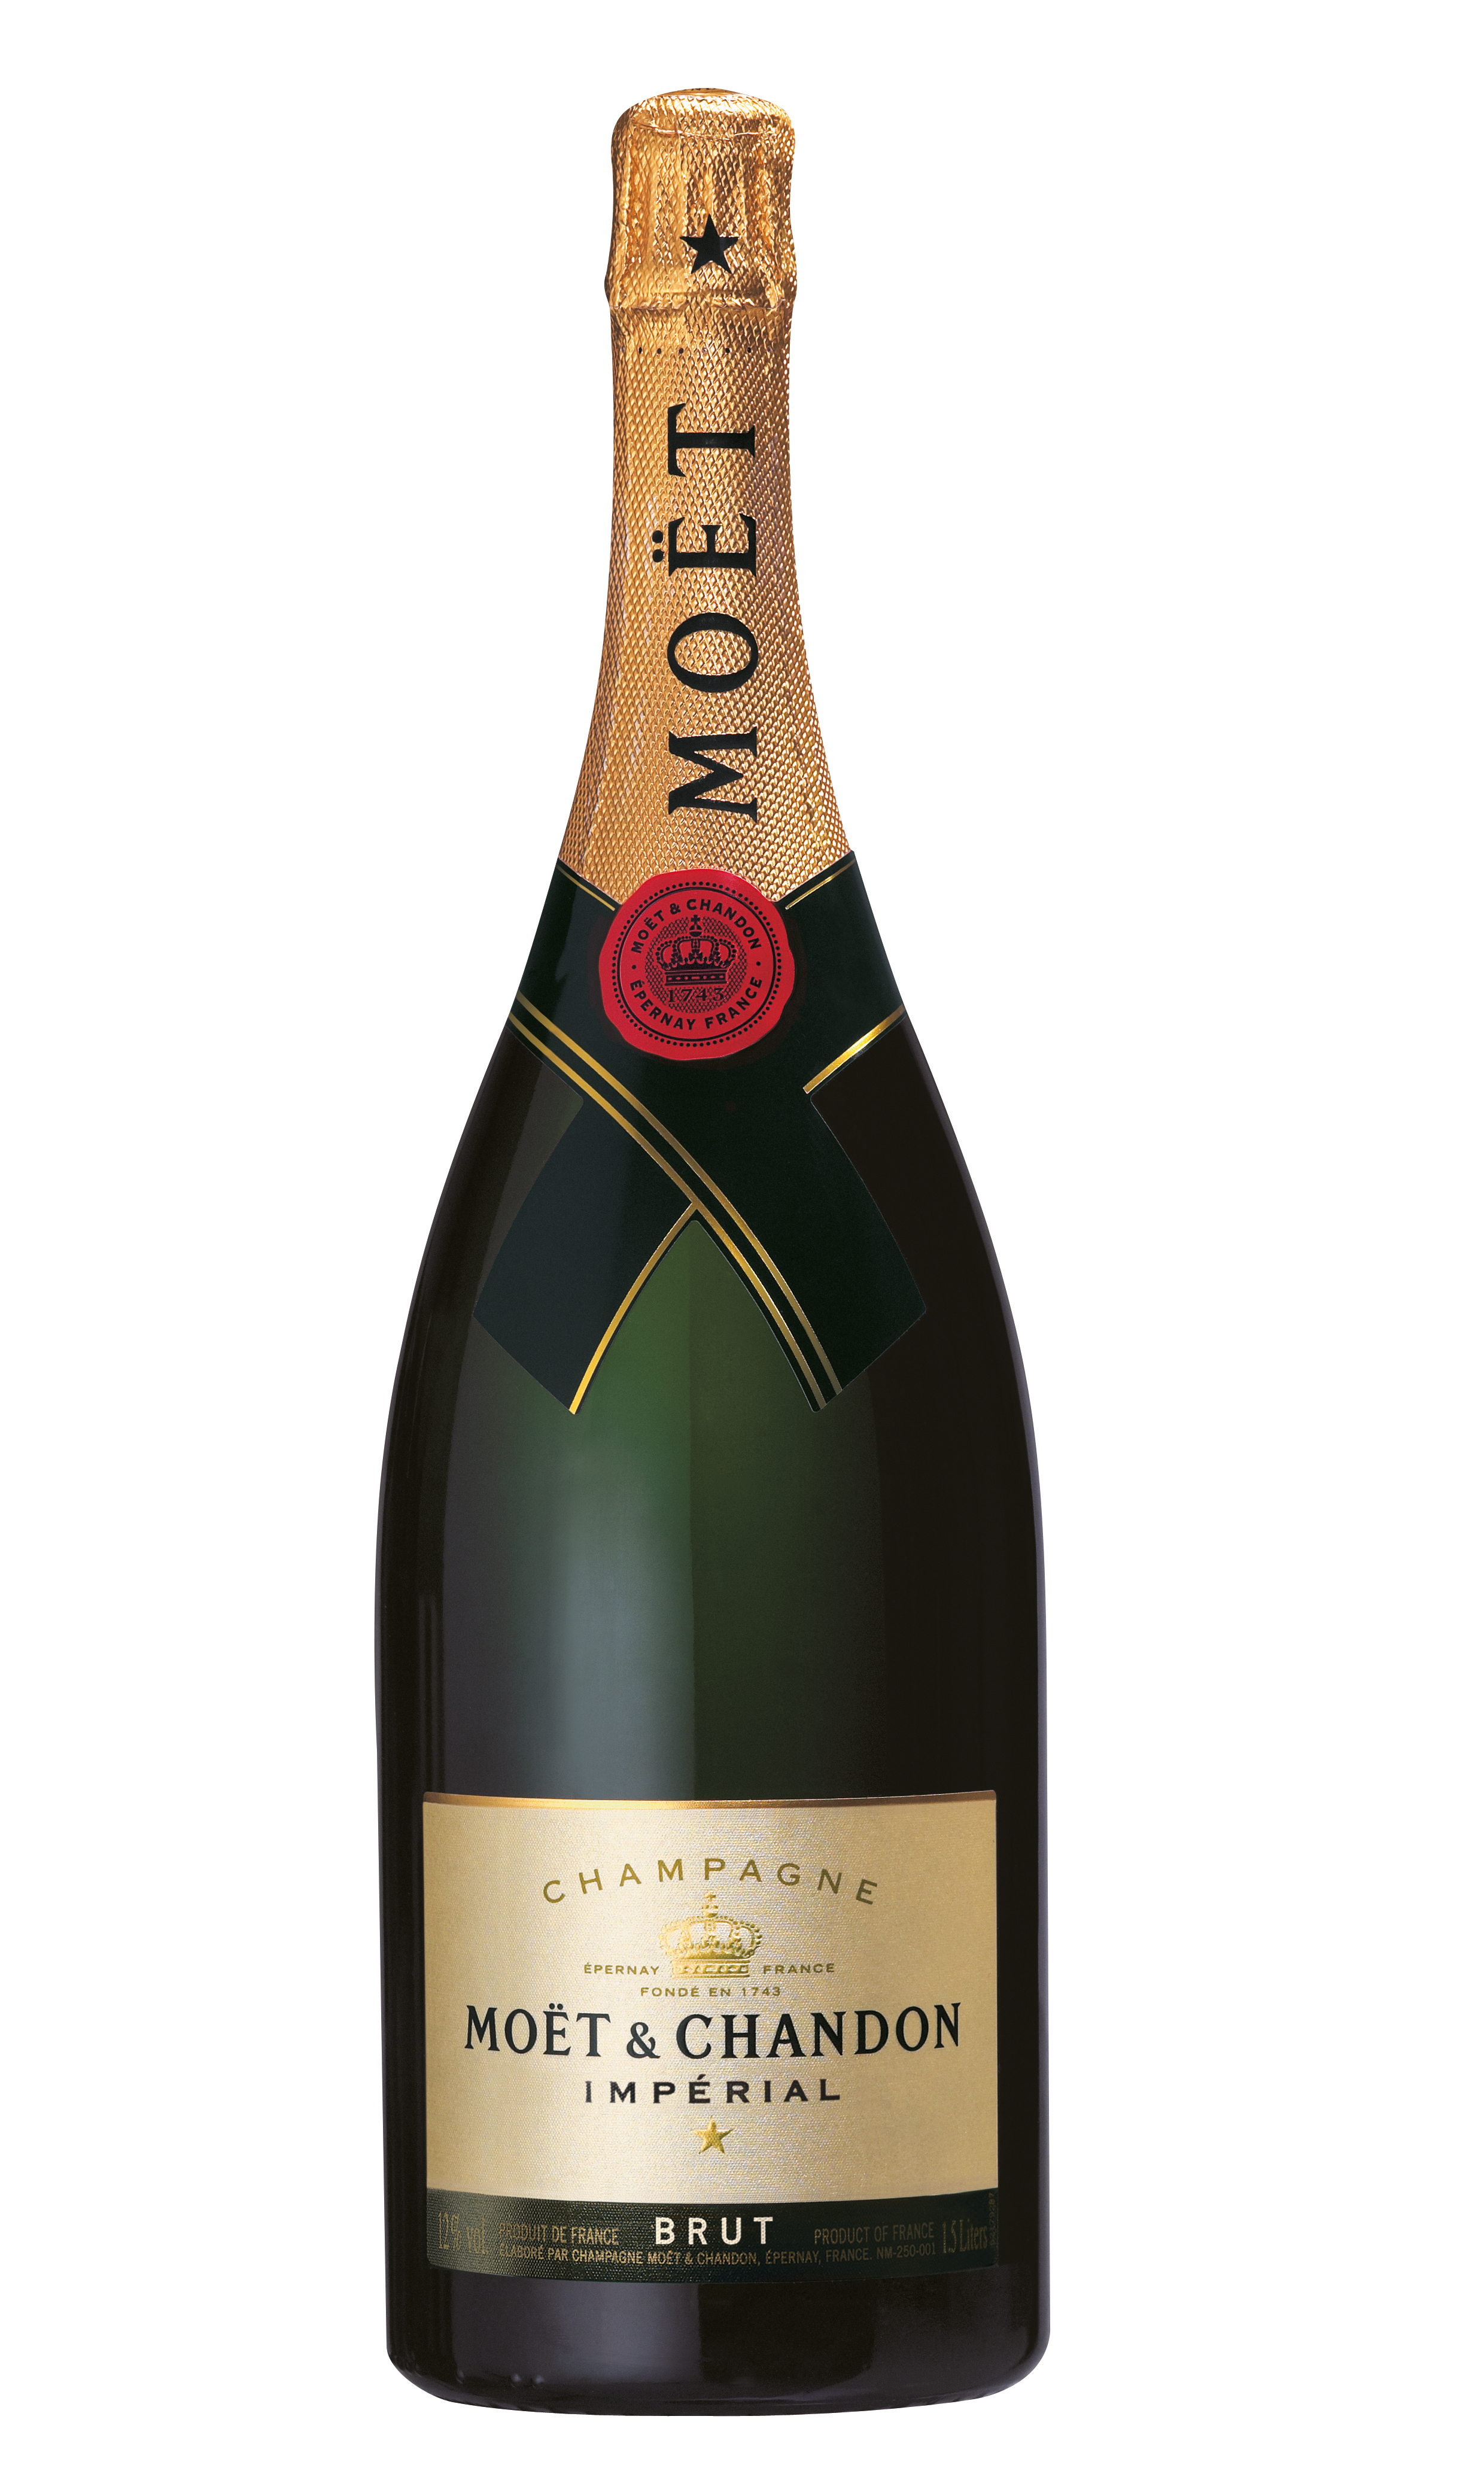 Champagner Moet & Chandon brut Imperial Magnumflasche